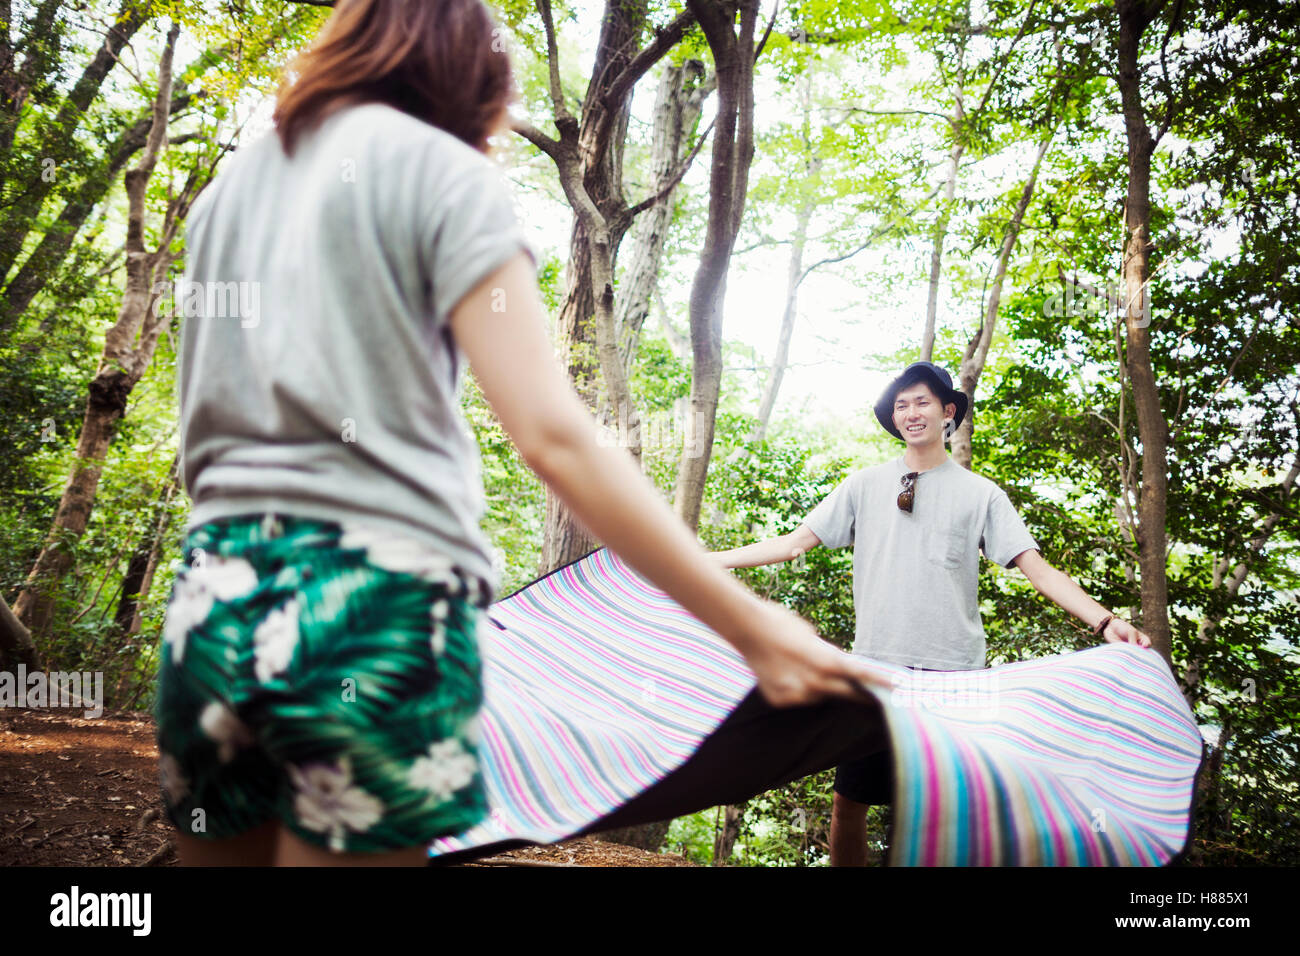 Junge Frau und Mann in einem Wald steht, hält eine Picknickdecke. Stockfoto